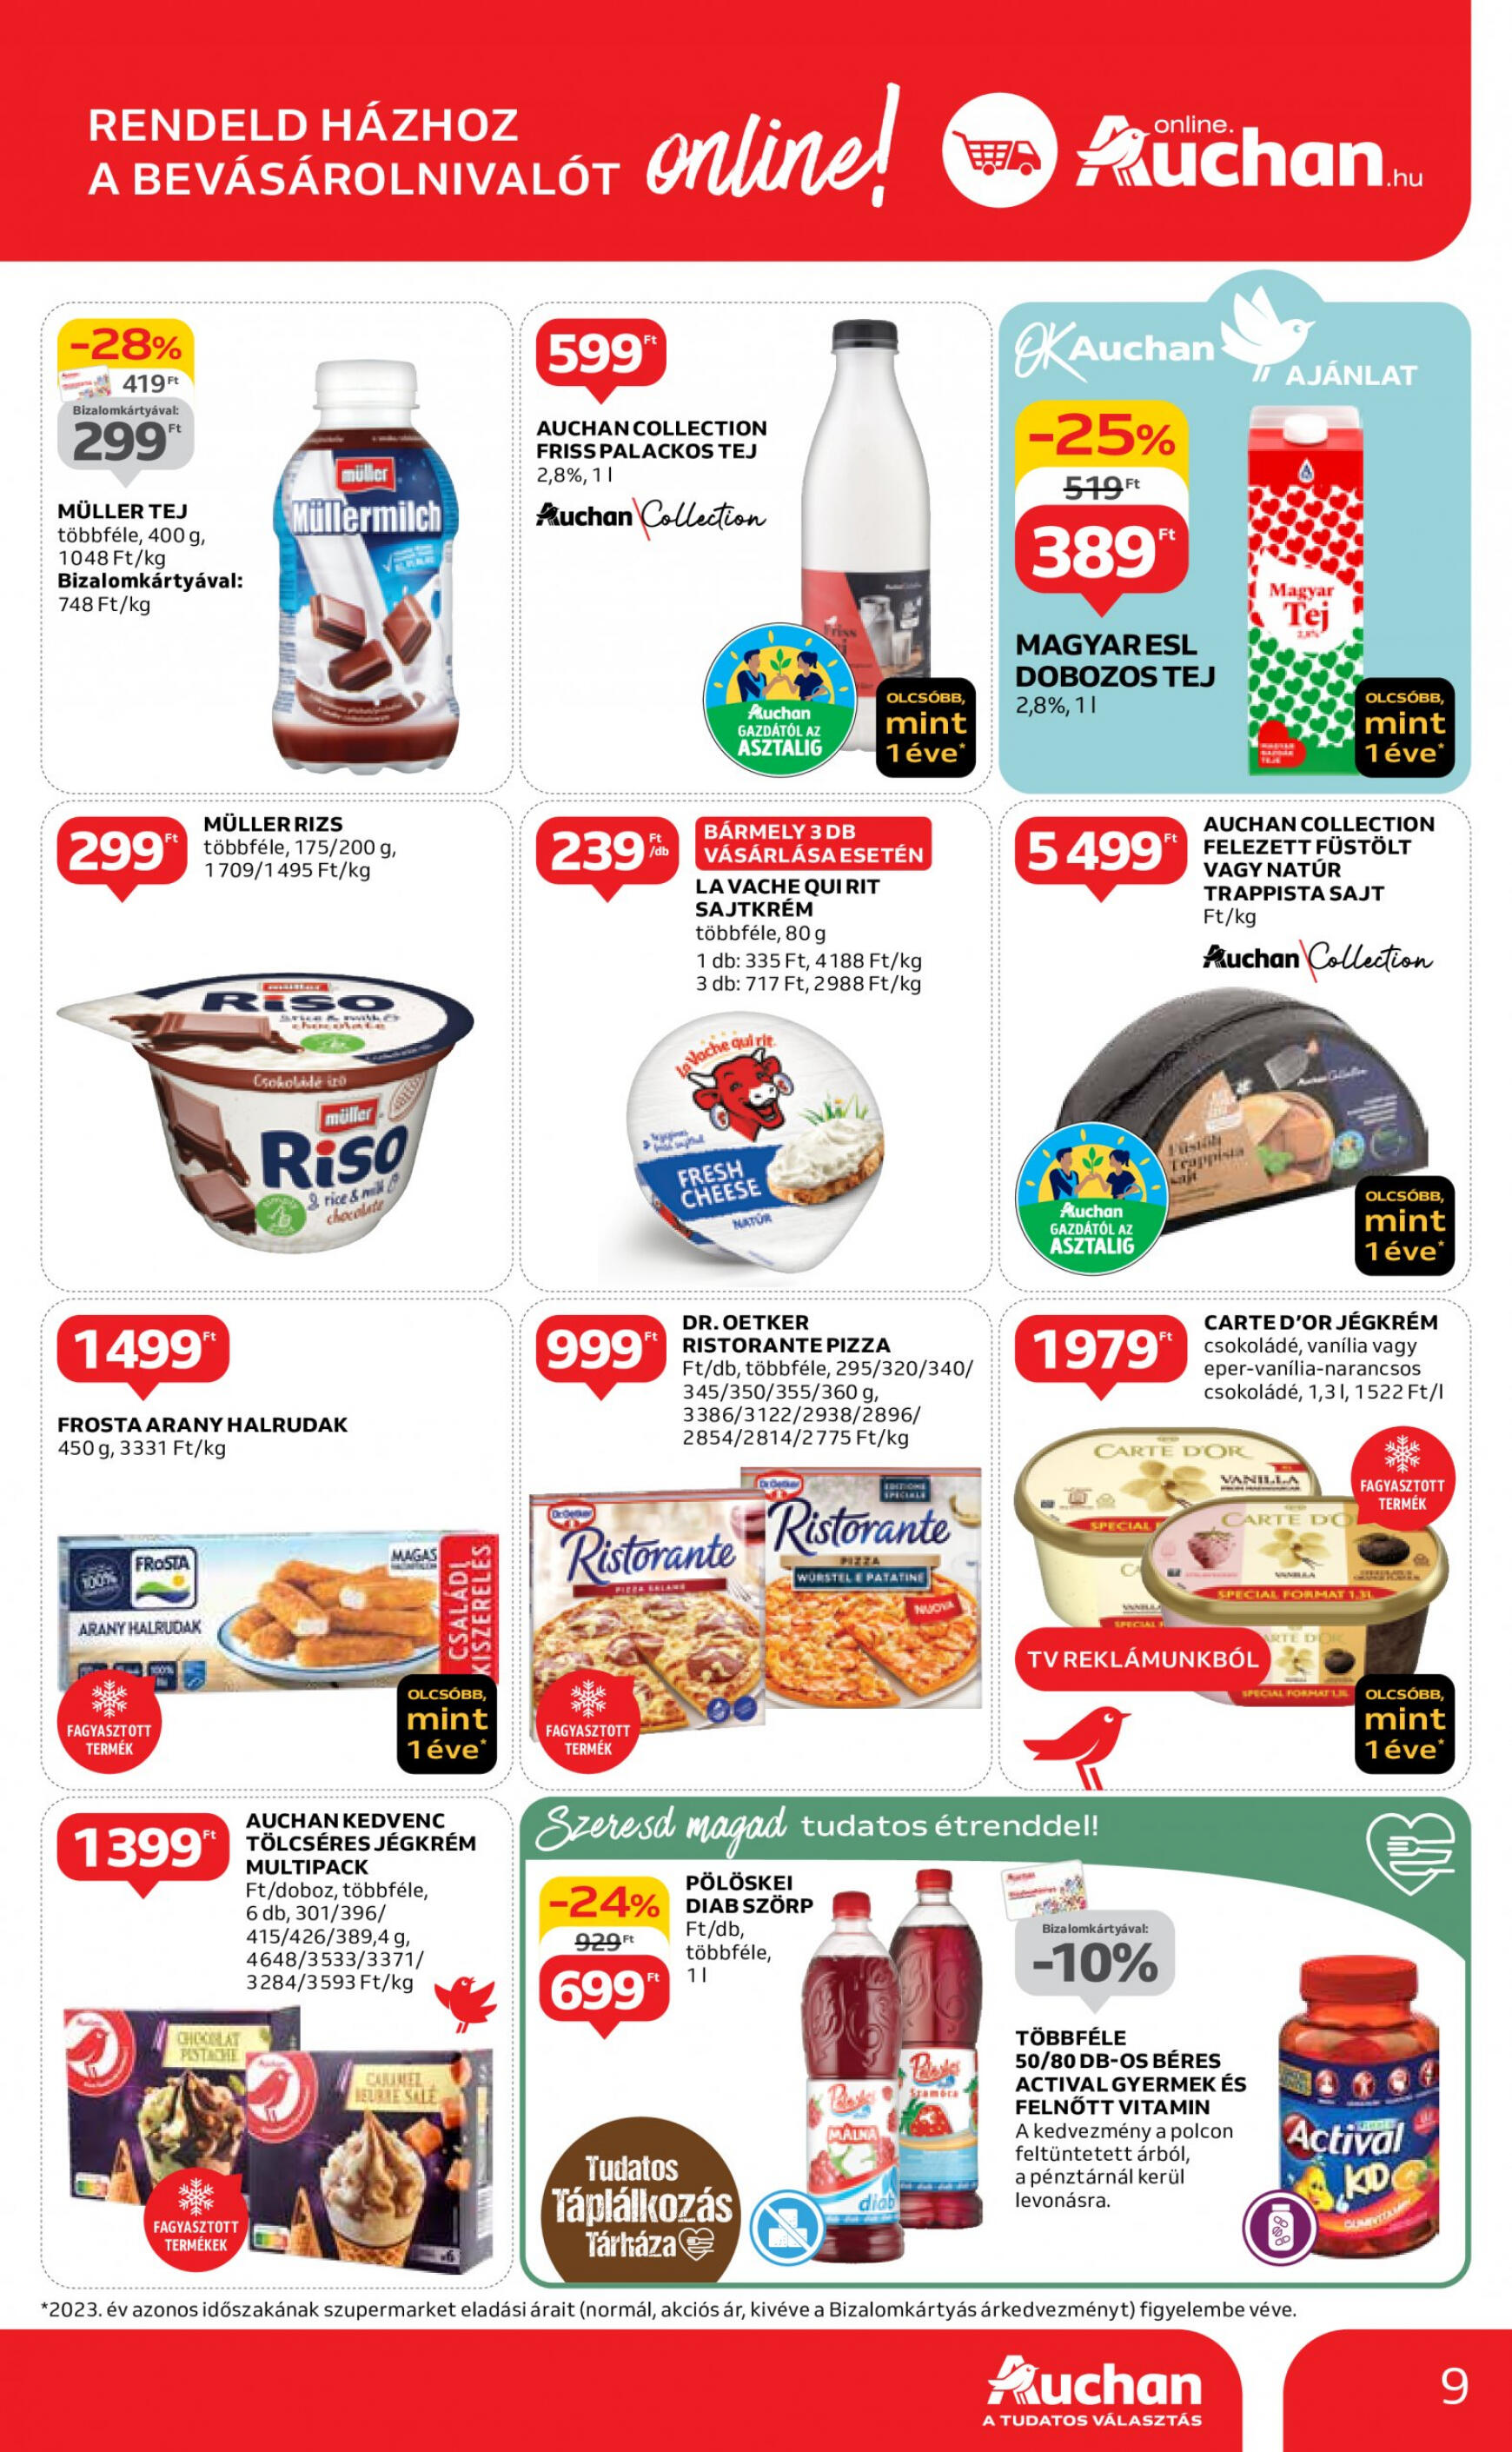 auchan - Aktuális újság Auchan szupermarket 05.02. - 05.08. - page: 9